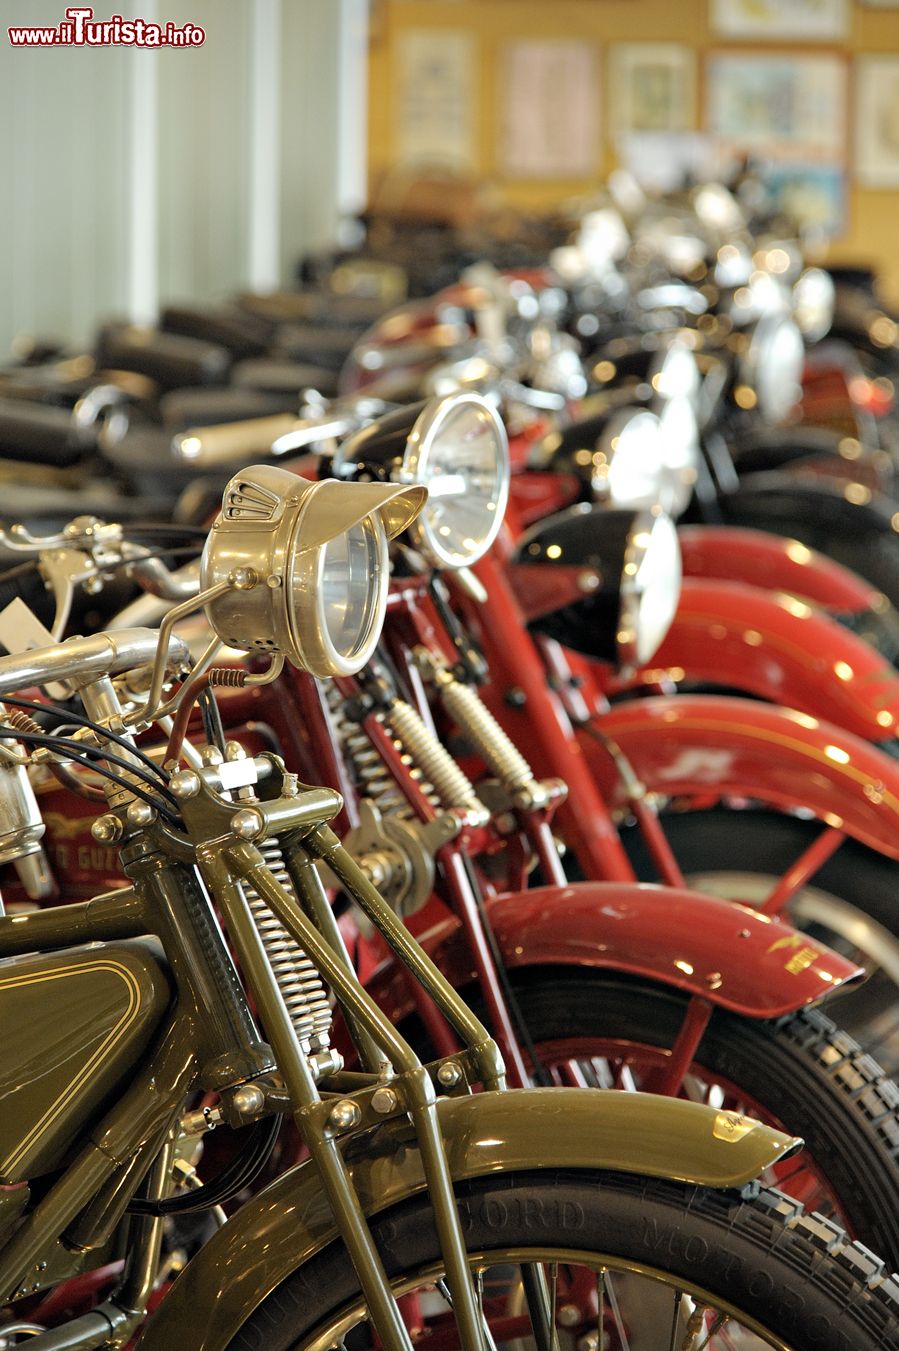 Immagine Collezione di Motociclette al Museo Nicolis a Villafranca di Verona - © museonicolis.com